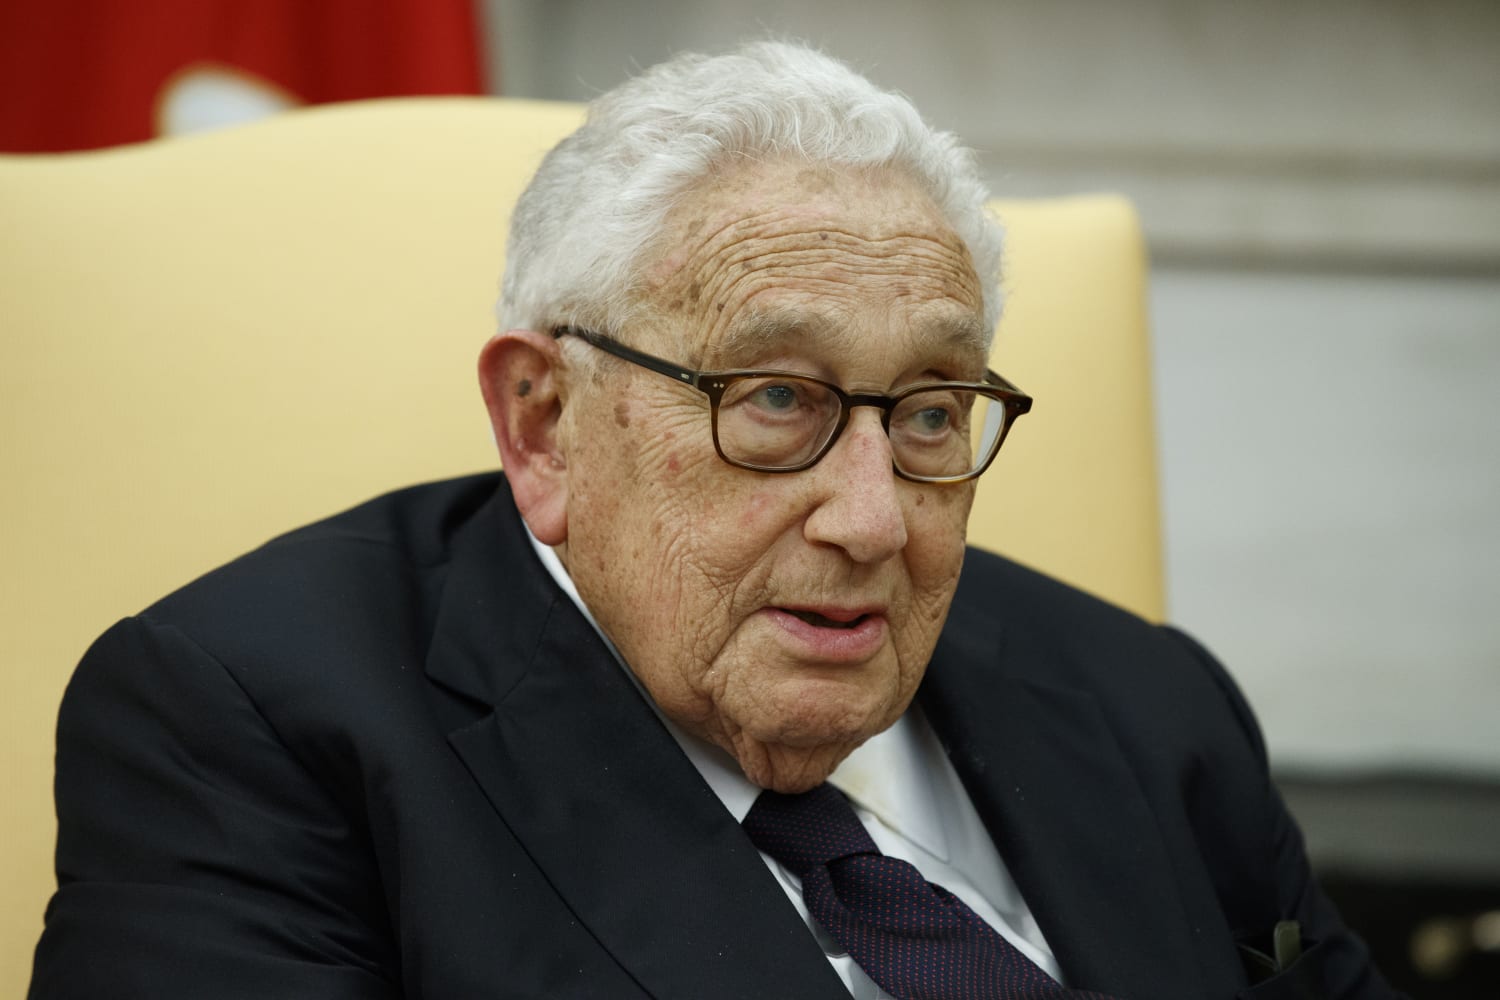 Henry Kissinger, former U.S. diplomat, celebrates 100th birthday